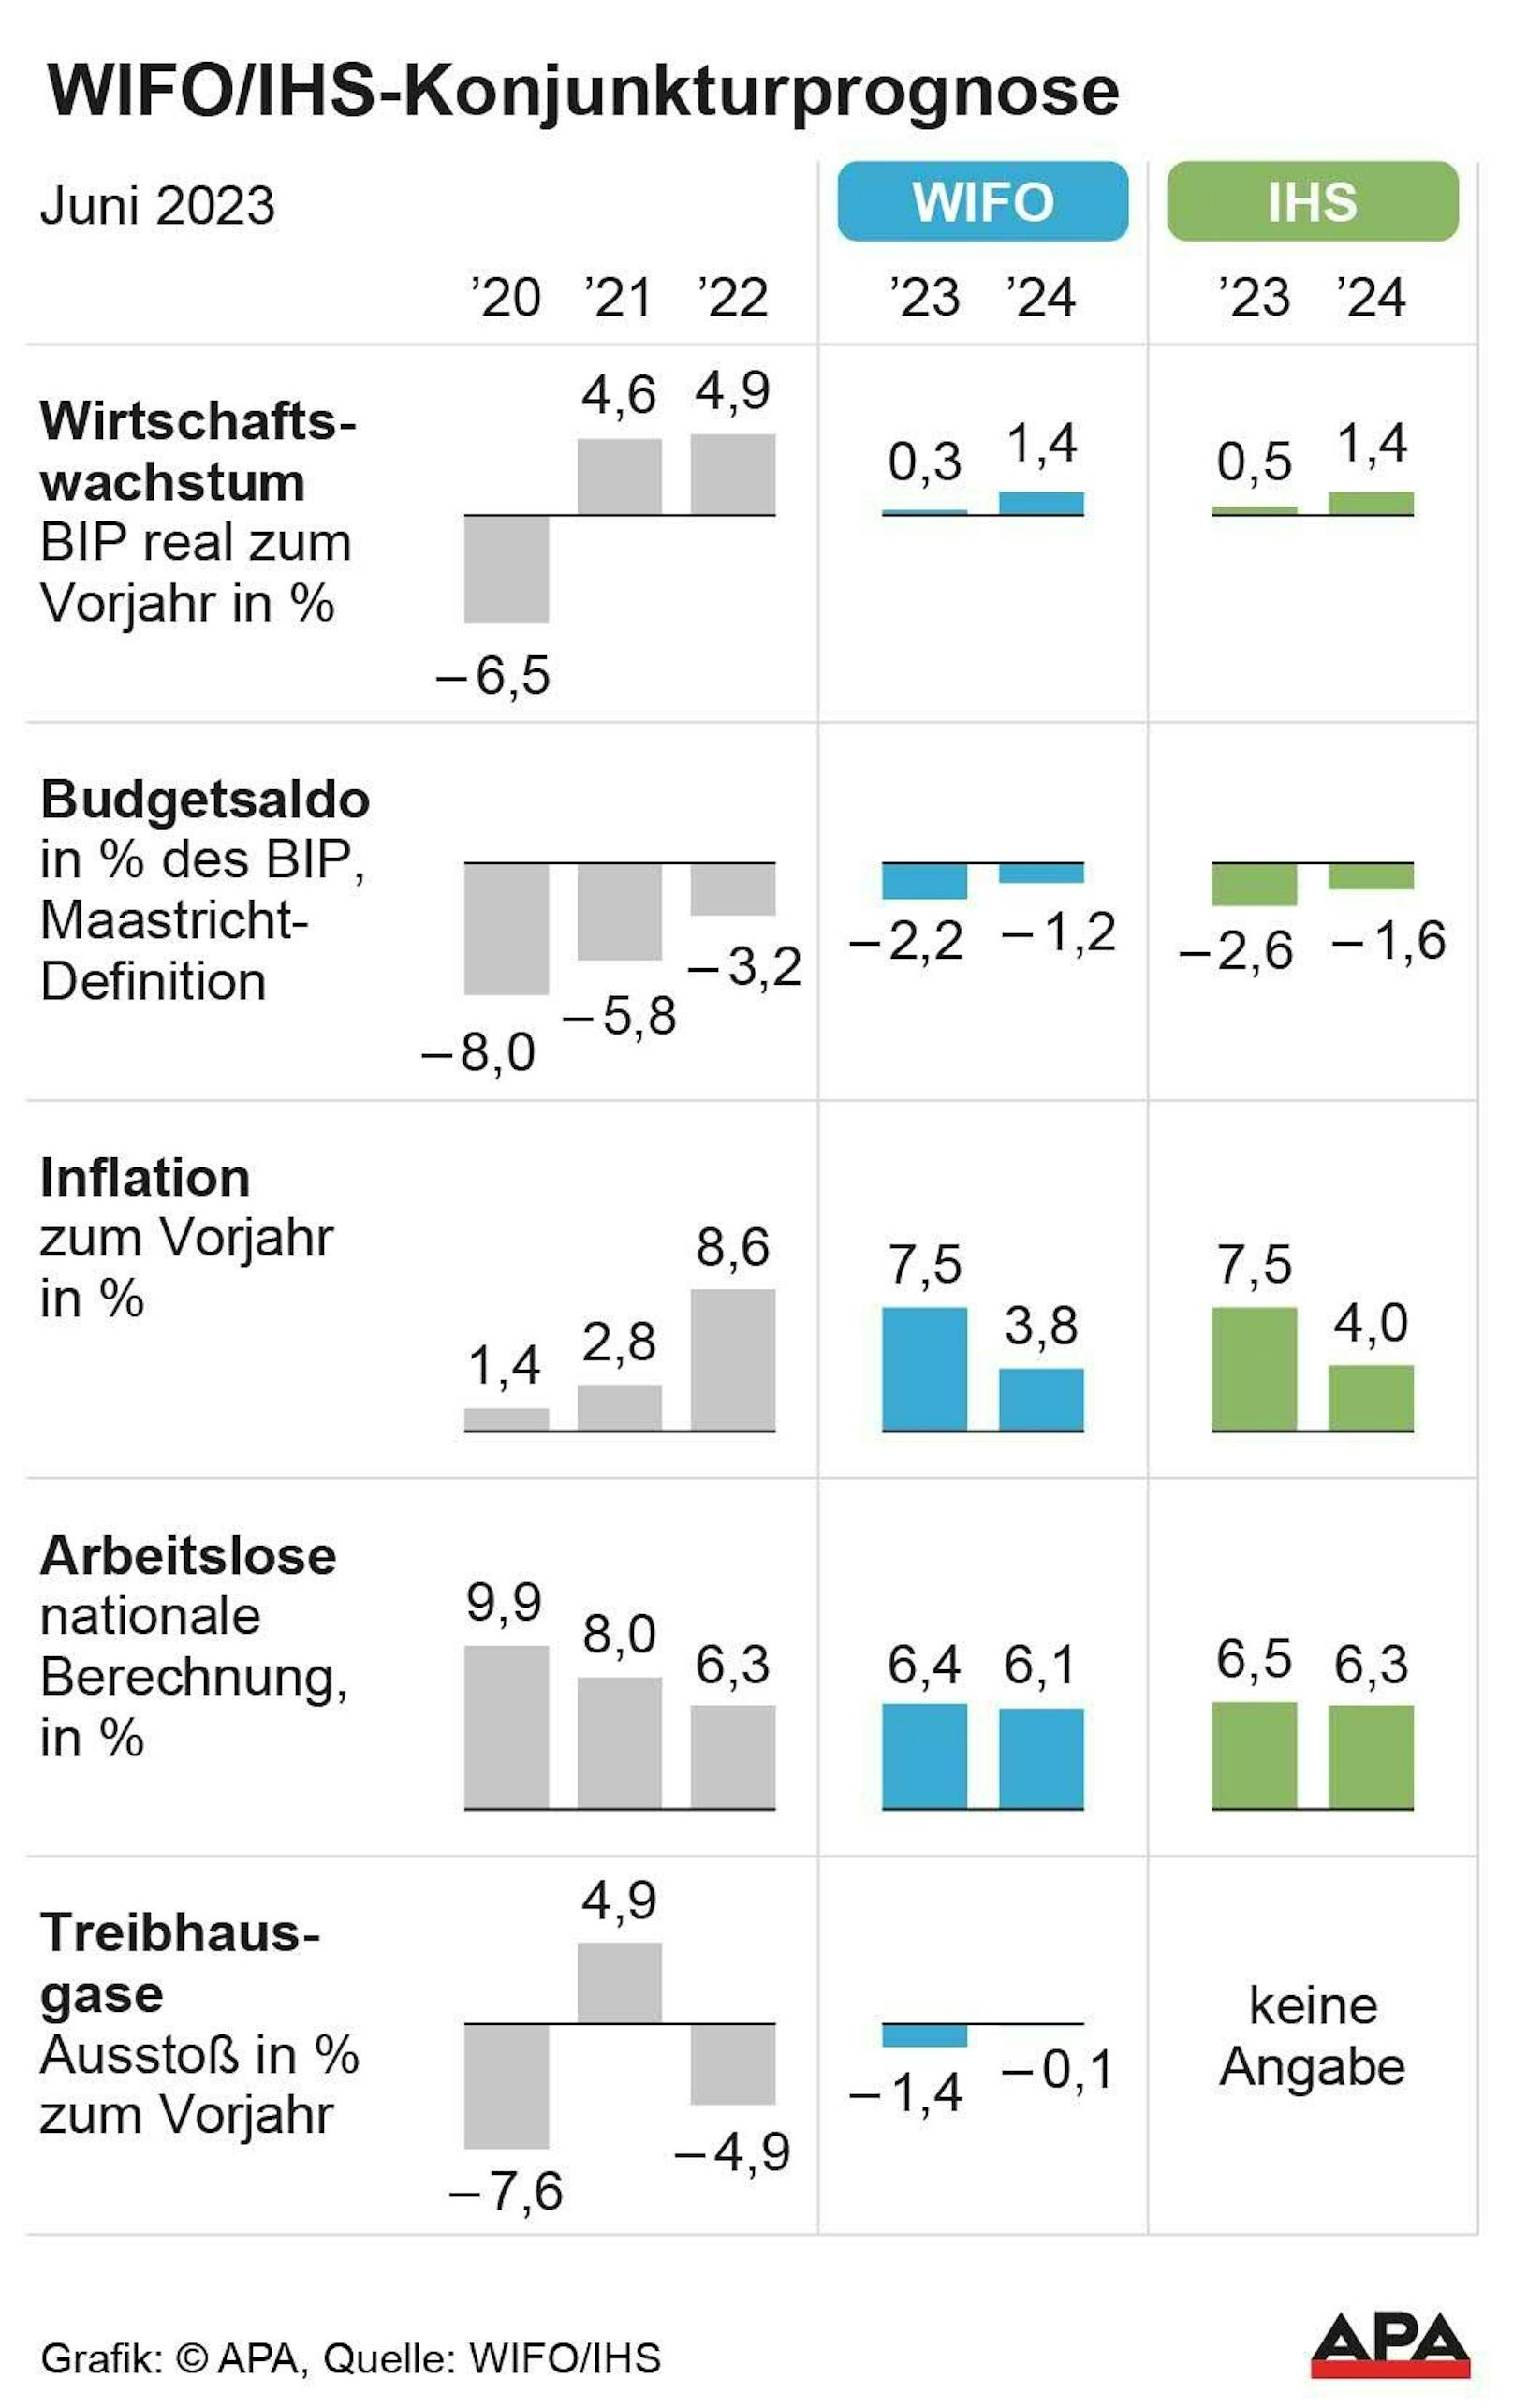 Prognose von WIFO und IHS 2023 und 2024: BIP-Wachstum, Inflation, Budgetsaldo, Arbeitslosenrate, Ausstoß von Treibhausgasen